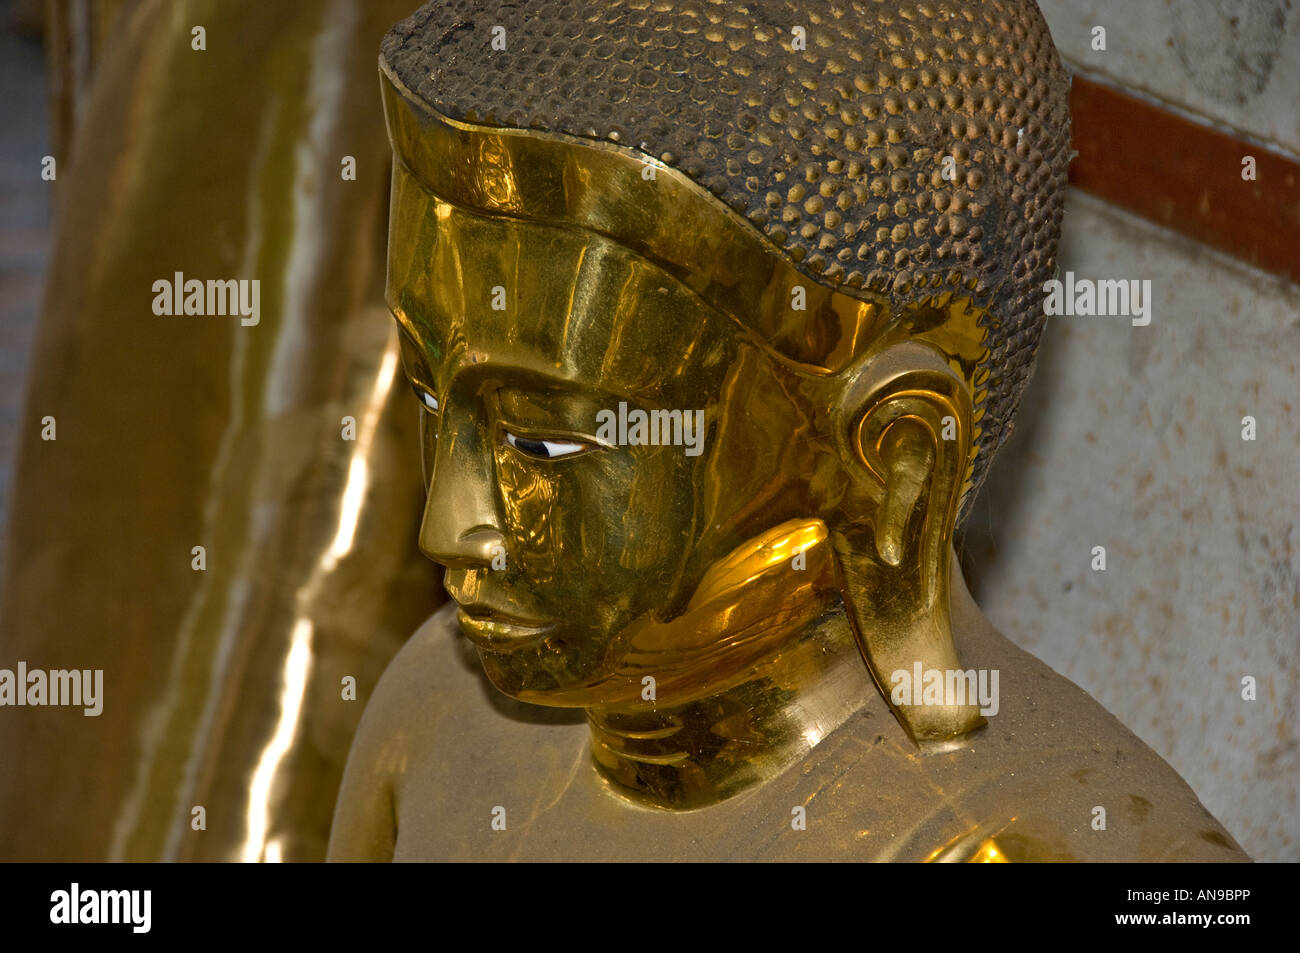 Estatua de Buda de bronce fundido recién de una fundición en Amarapura, Birmania. Foto de stock